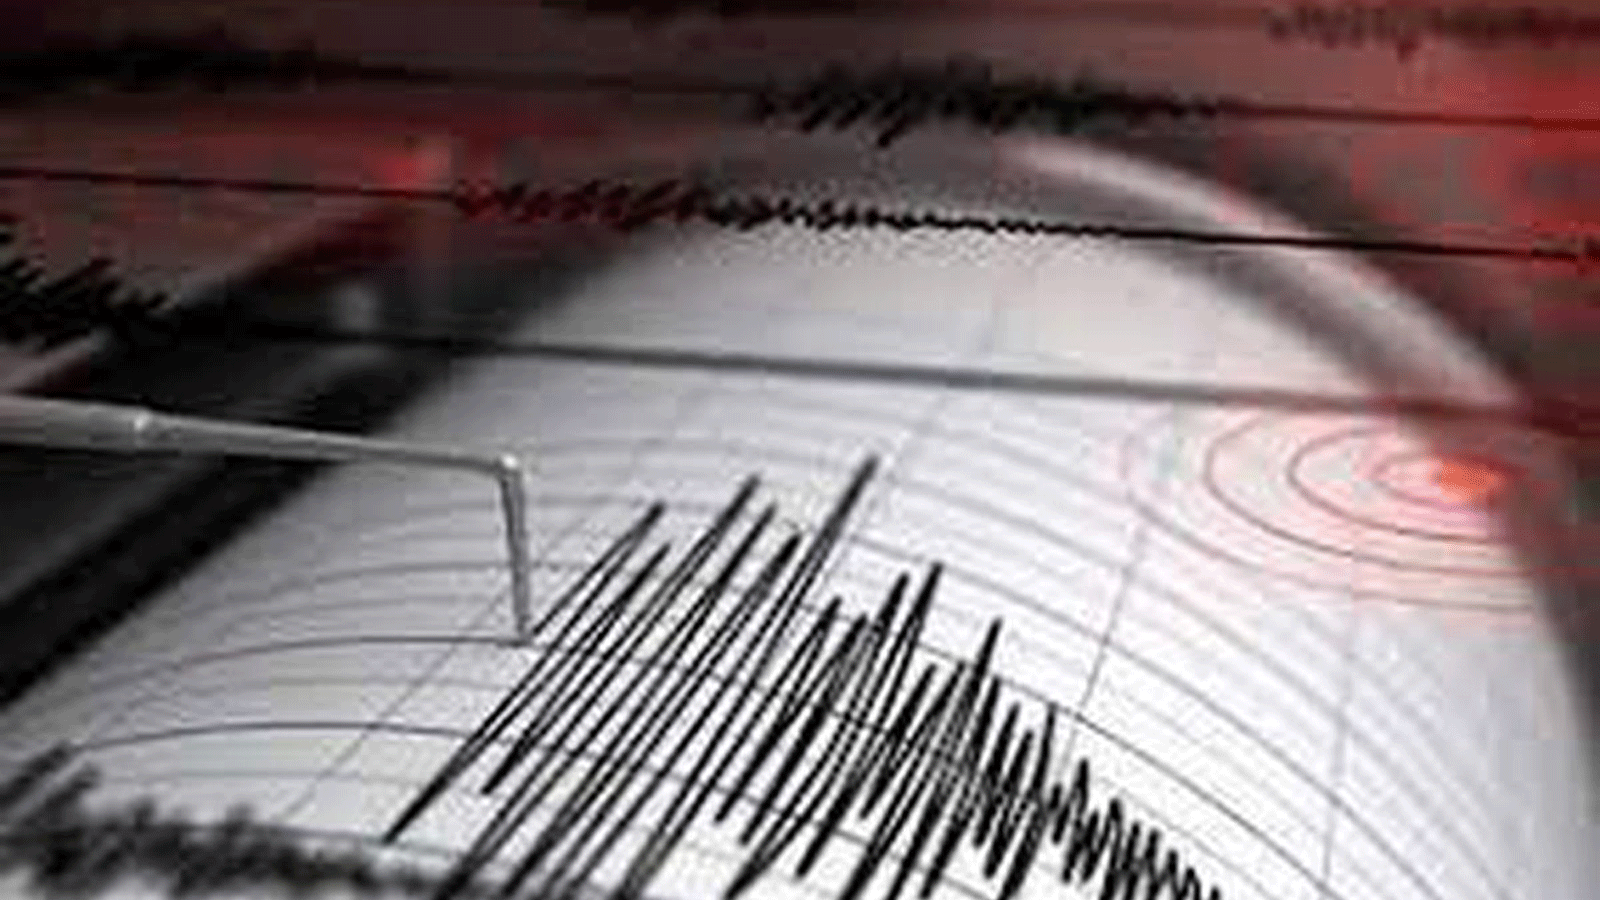 زلزال بقوة 6,9 درجات قبالة غرب إندونيسيا